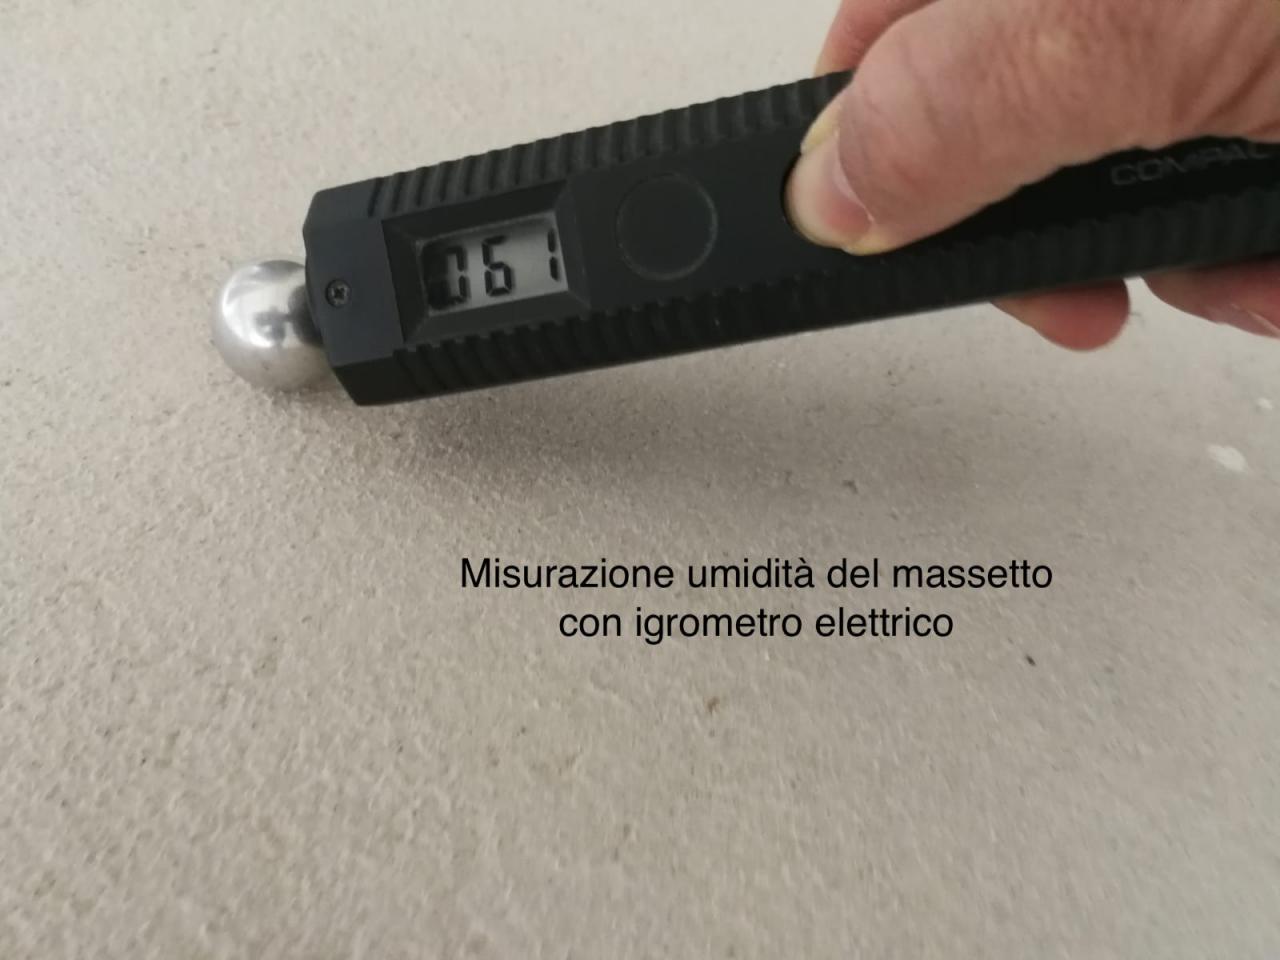 Misurazione umidità con igrometro elettrico